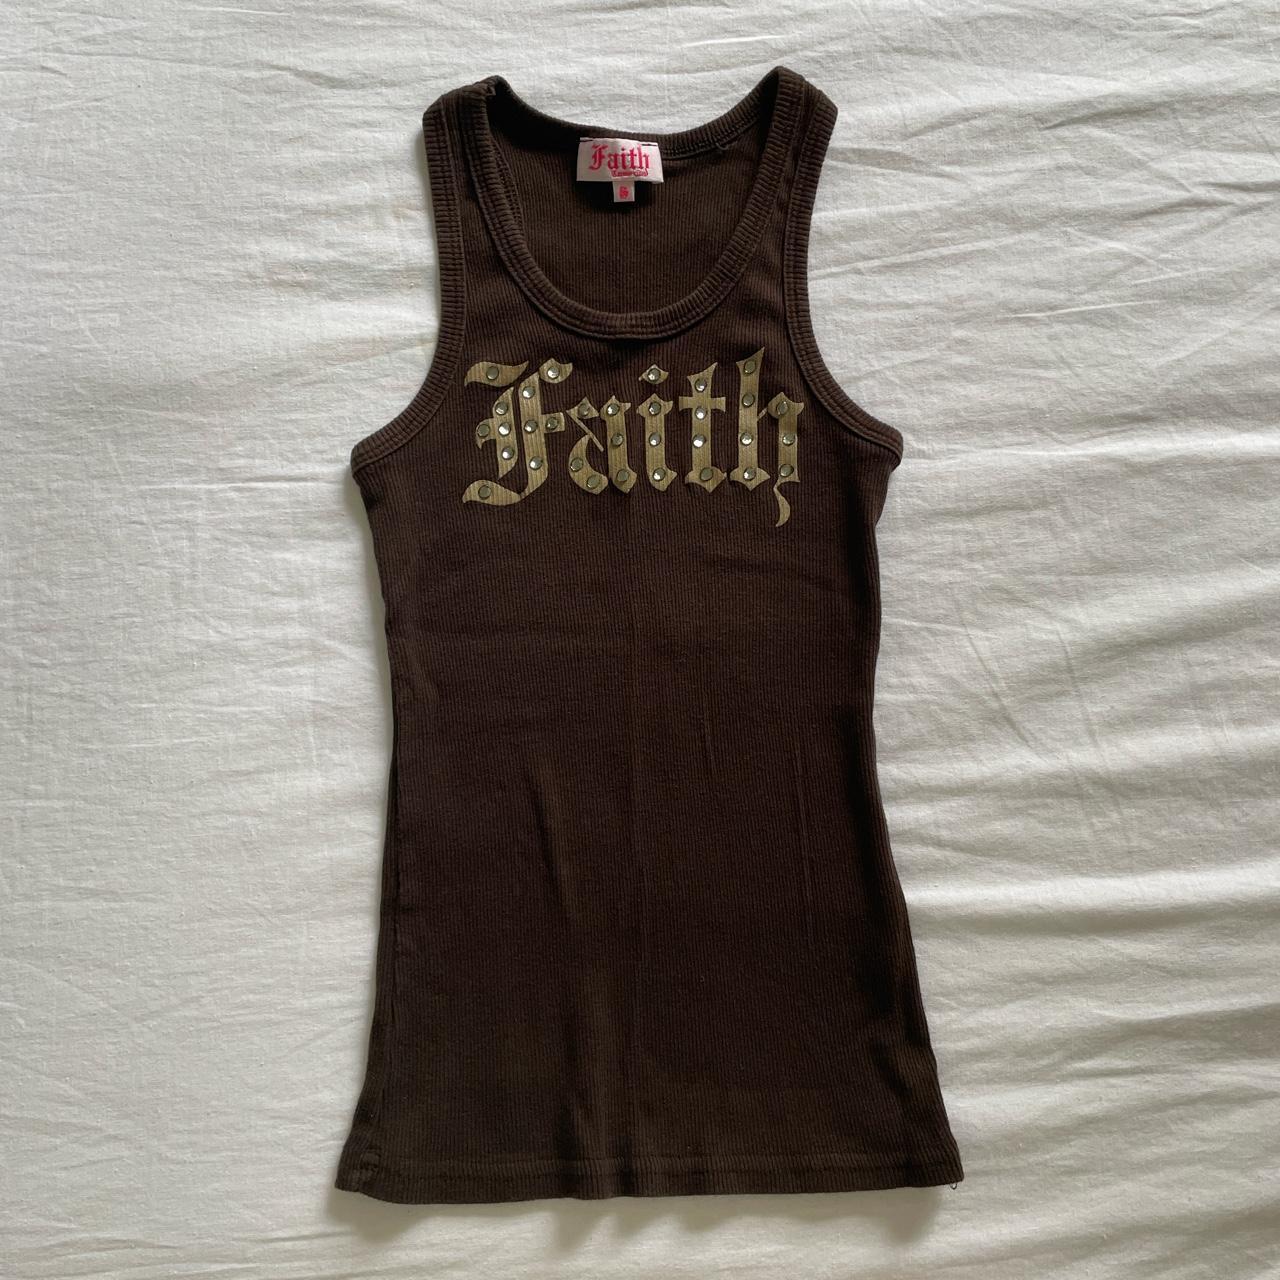 Faith Women's Brown Vest